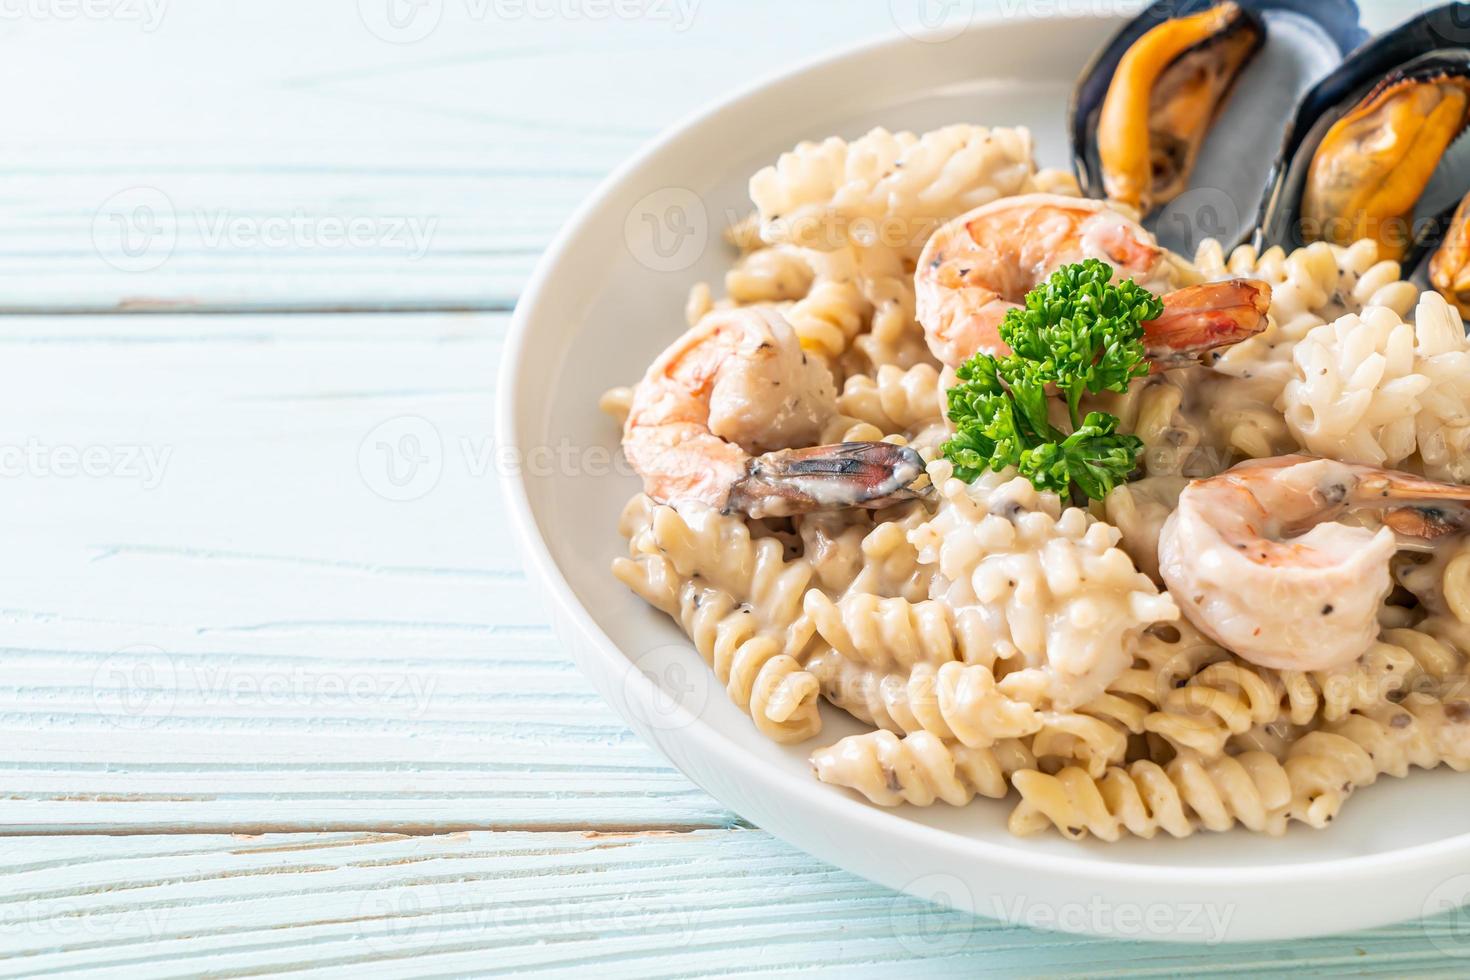 sauce crème aux champignons pâtes en spirale aux fruits de mer - style cuisine italienne photo